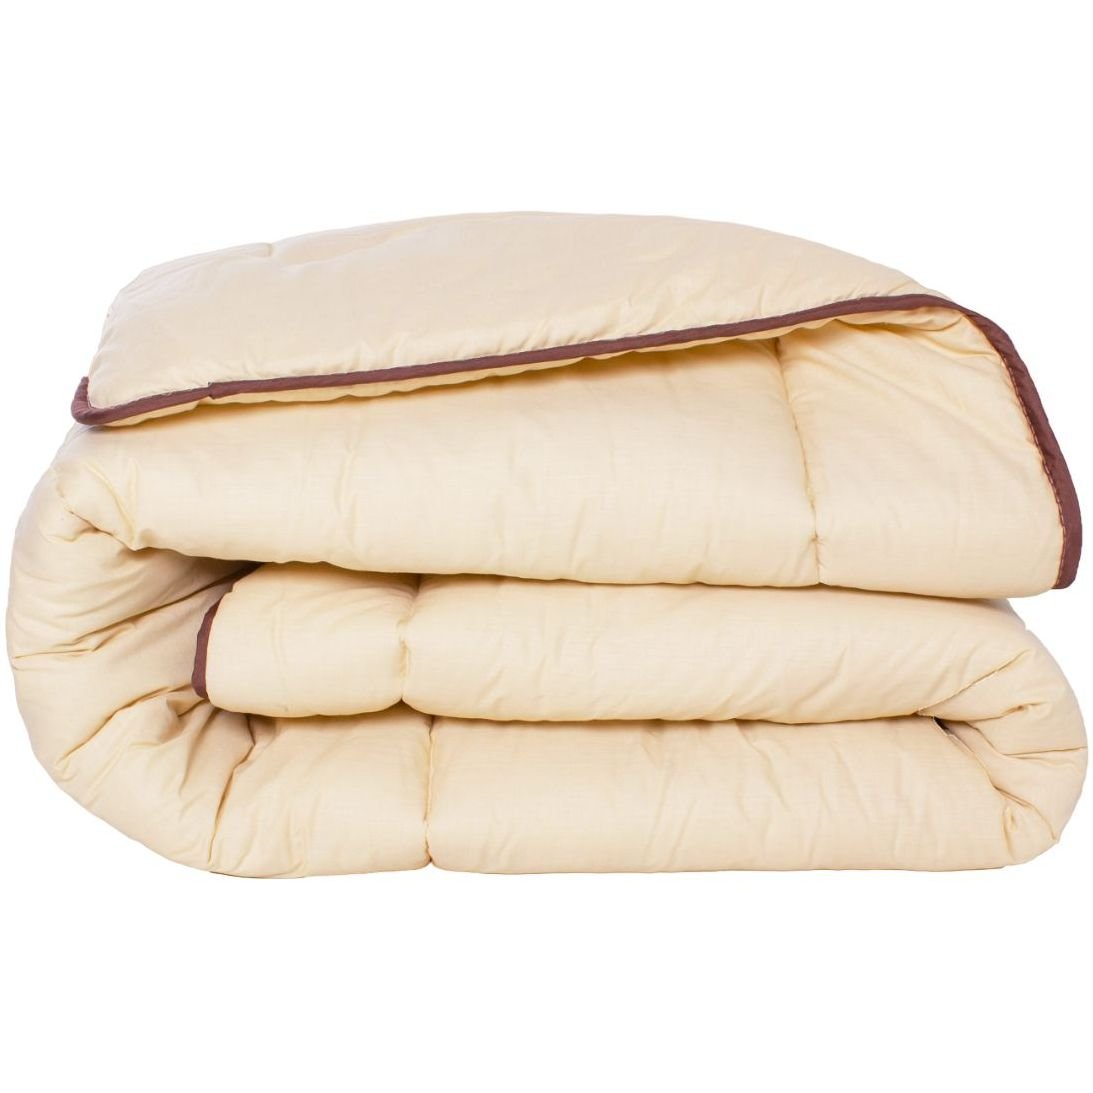 Одеяло шерстяное MirSon Carmela №0335, зимнее, 110x140 см, бежевое - фото 1